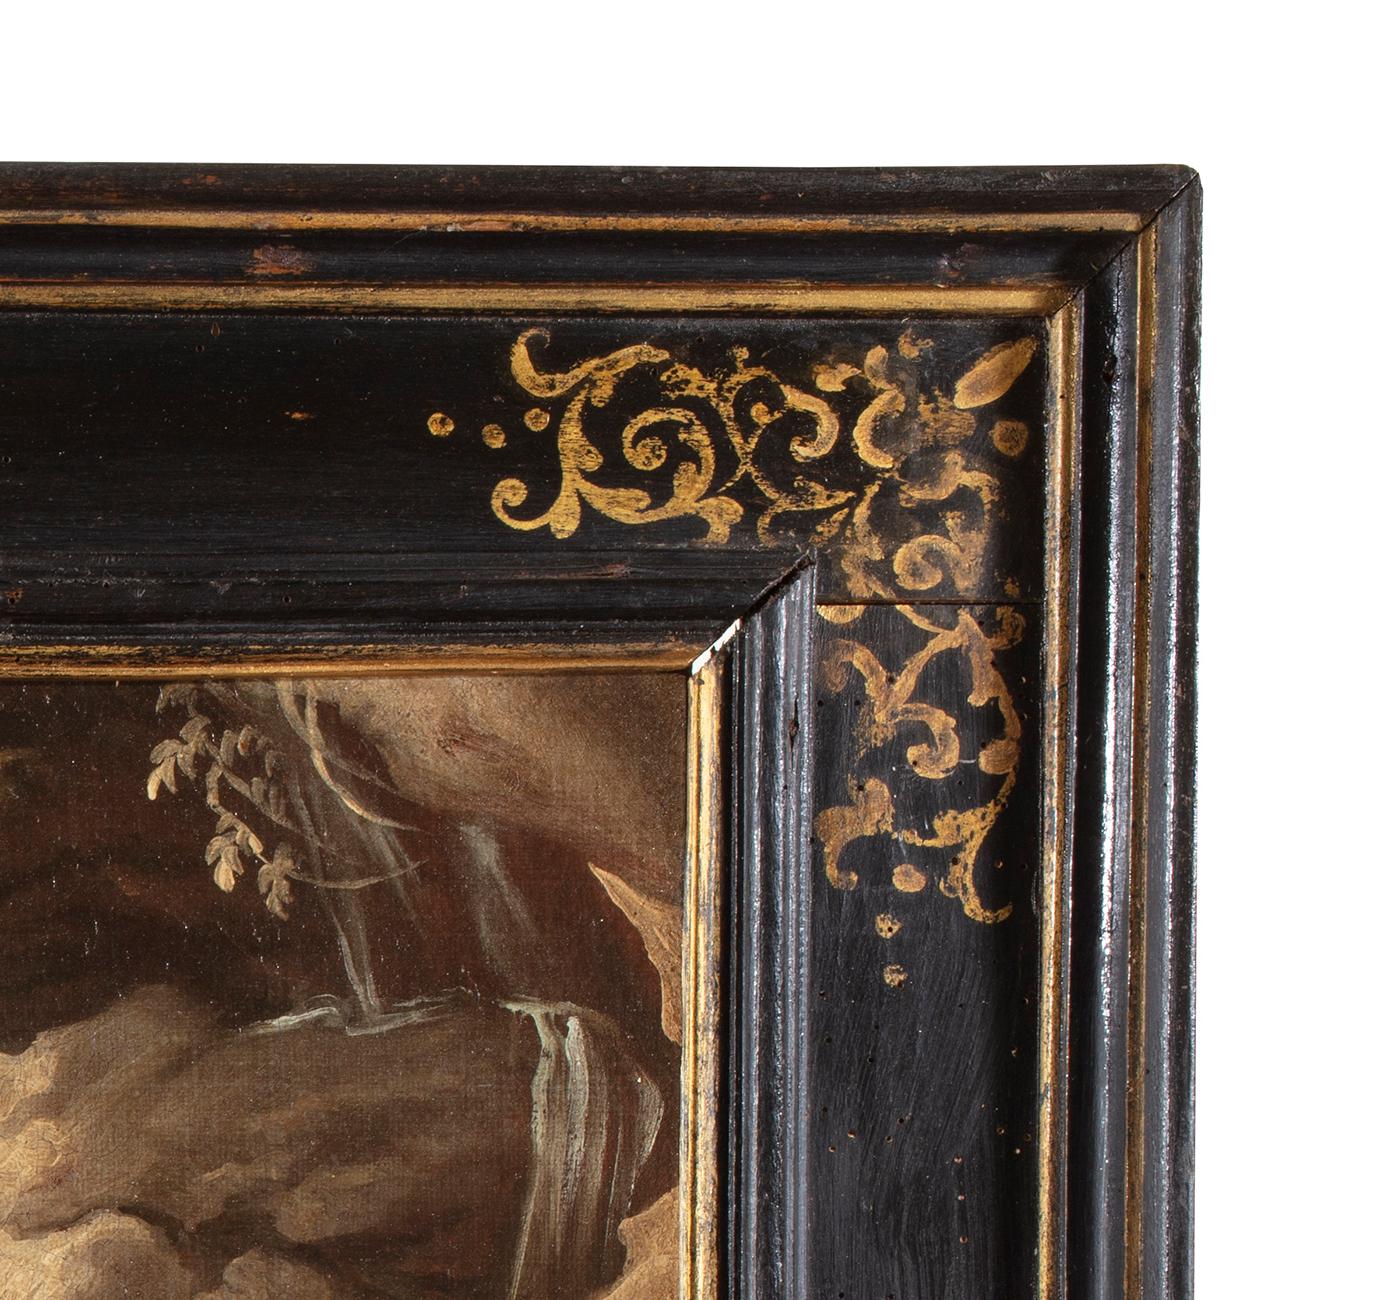 Giuseppe Antonio Pianca (Agnona di Borgosesia/VC, 1703 - après 1757)
 
huile sur toile, cm. 49 x 57 - avec cadre cm. 67 x 77
Cadre de cassetta en bois de forme ancienne, décorations en ébène et or

Posés sur la rive d'un torrent tumultueux, un